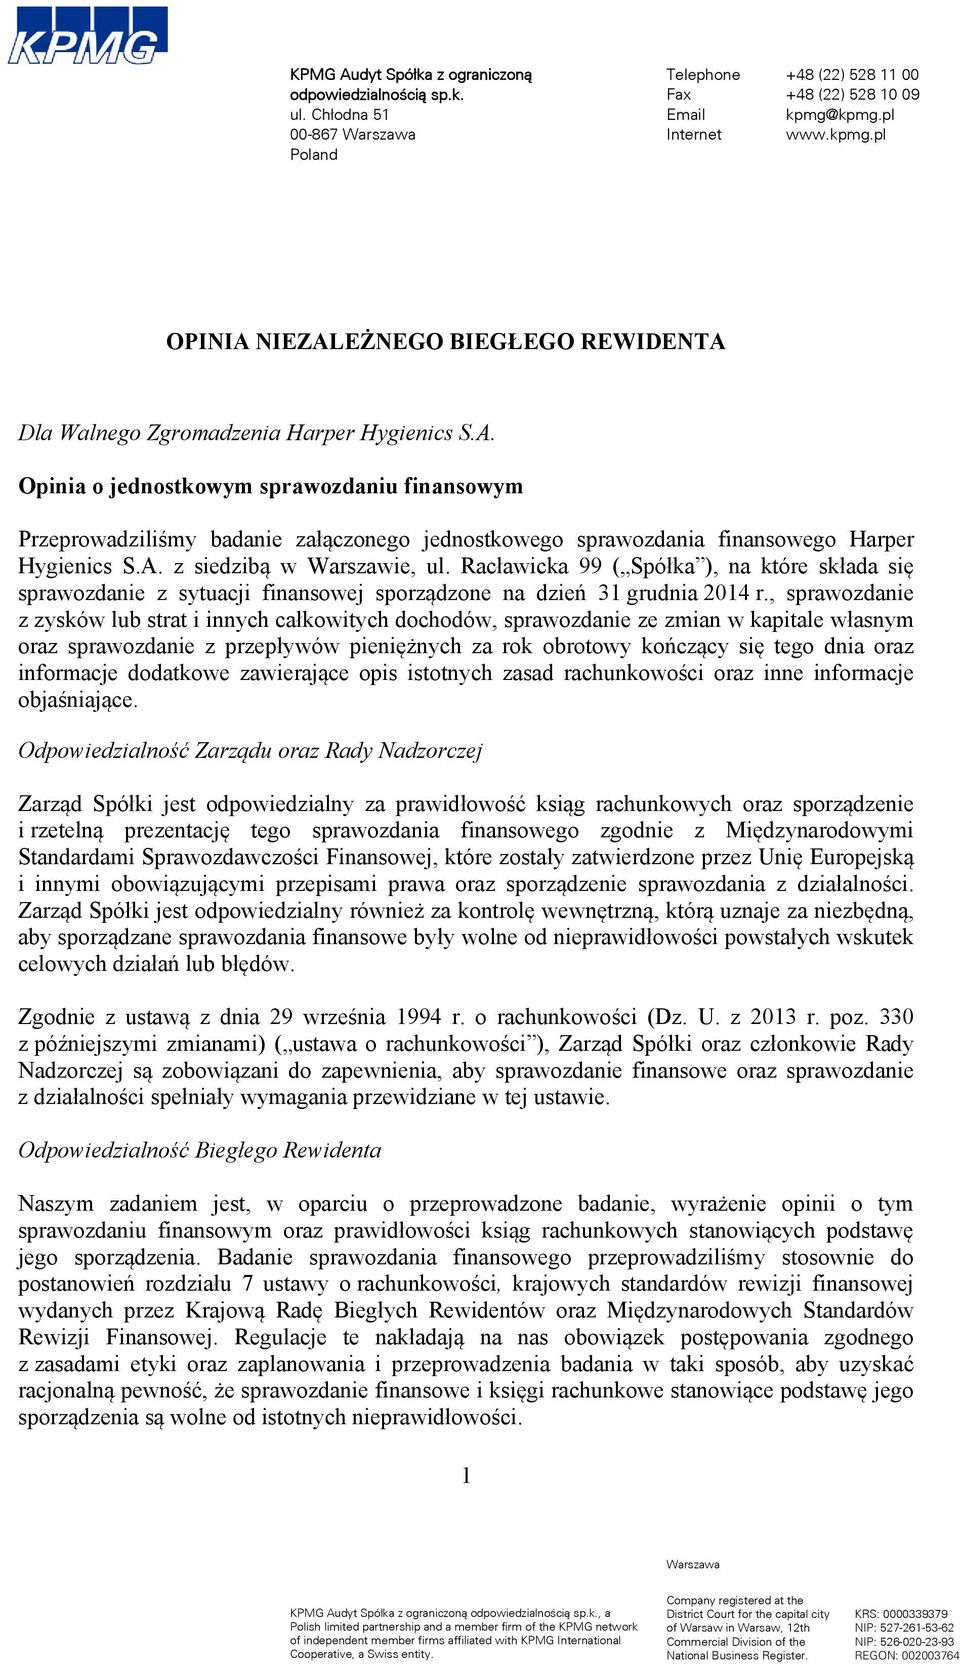 sprawozdania finansowego Harper Hygienics S.A. z siedzibą w Warszawie, ul. Racławicka 99 ( Spółka ), na które składa się sprawozdanie z sytuacji finansowej sporządzone na dzień 31 grudnia 2014 r.